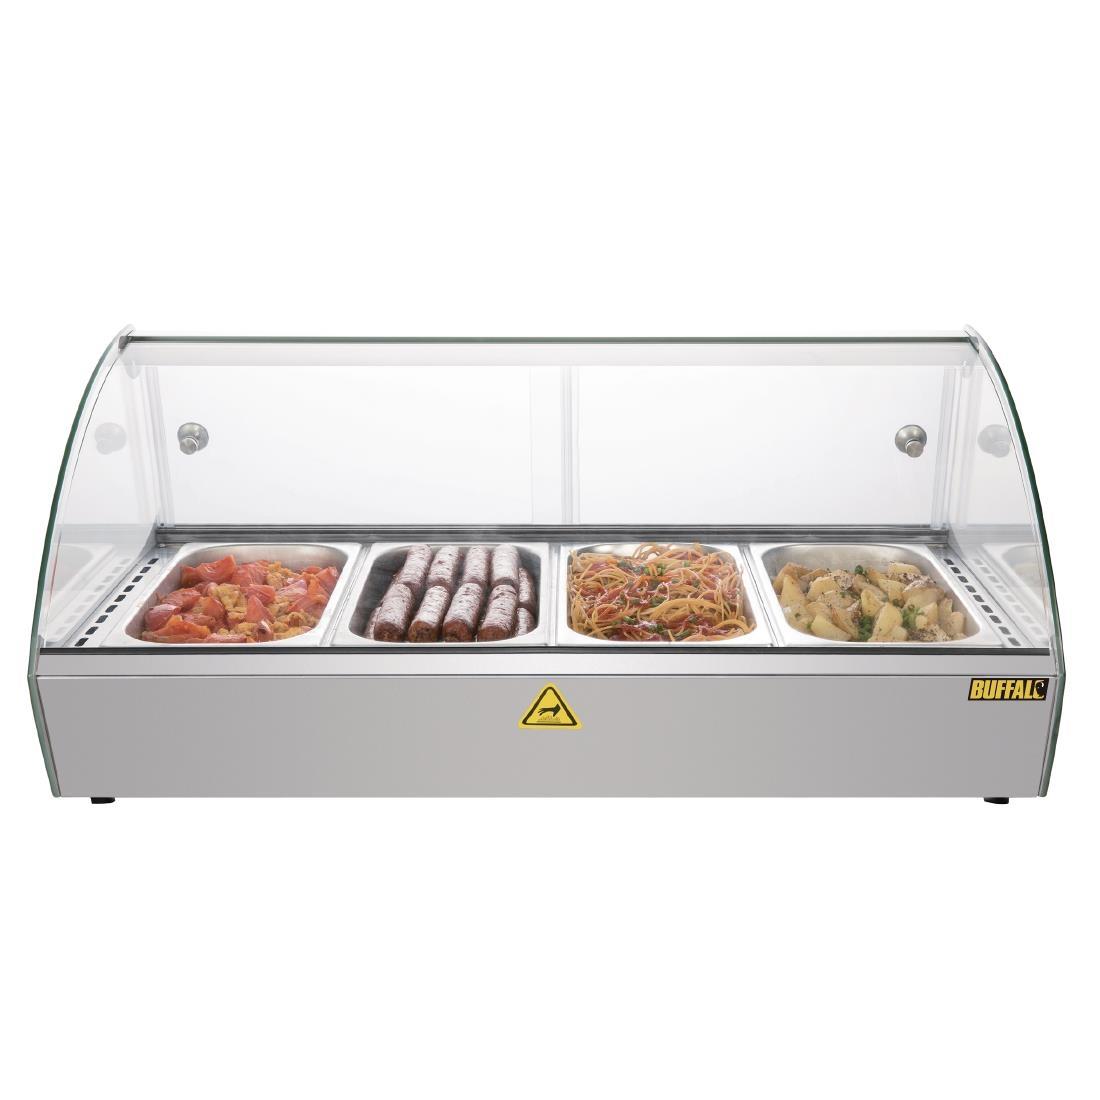 Buffalo Countertop Heated Food Display 800mm - CW147  - 5